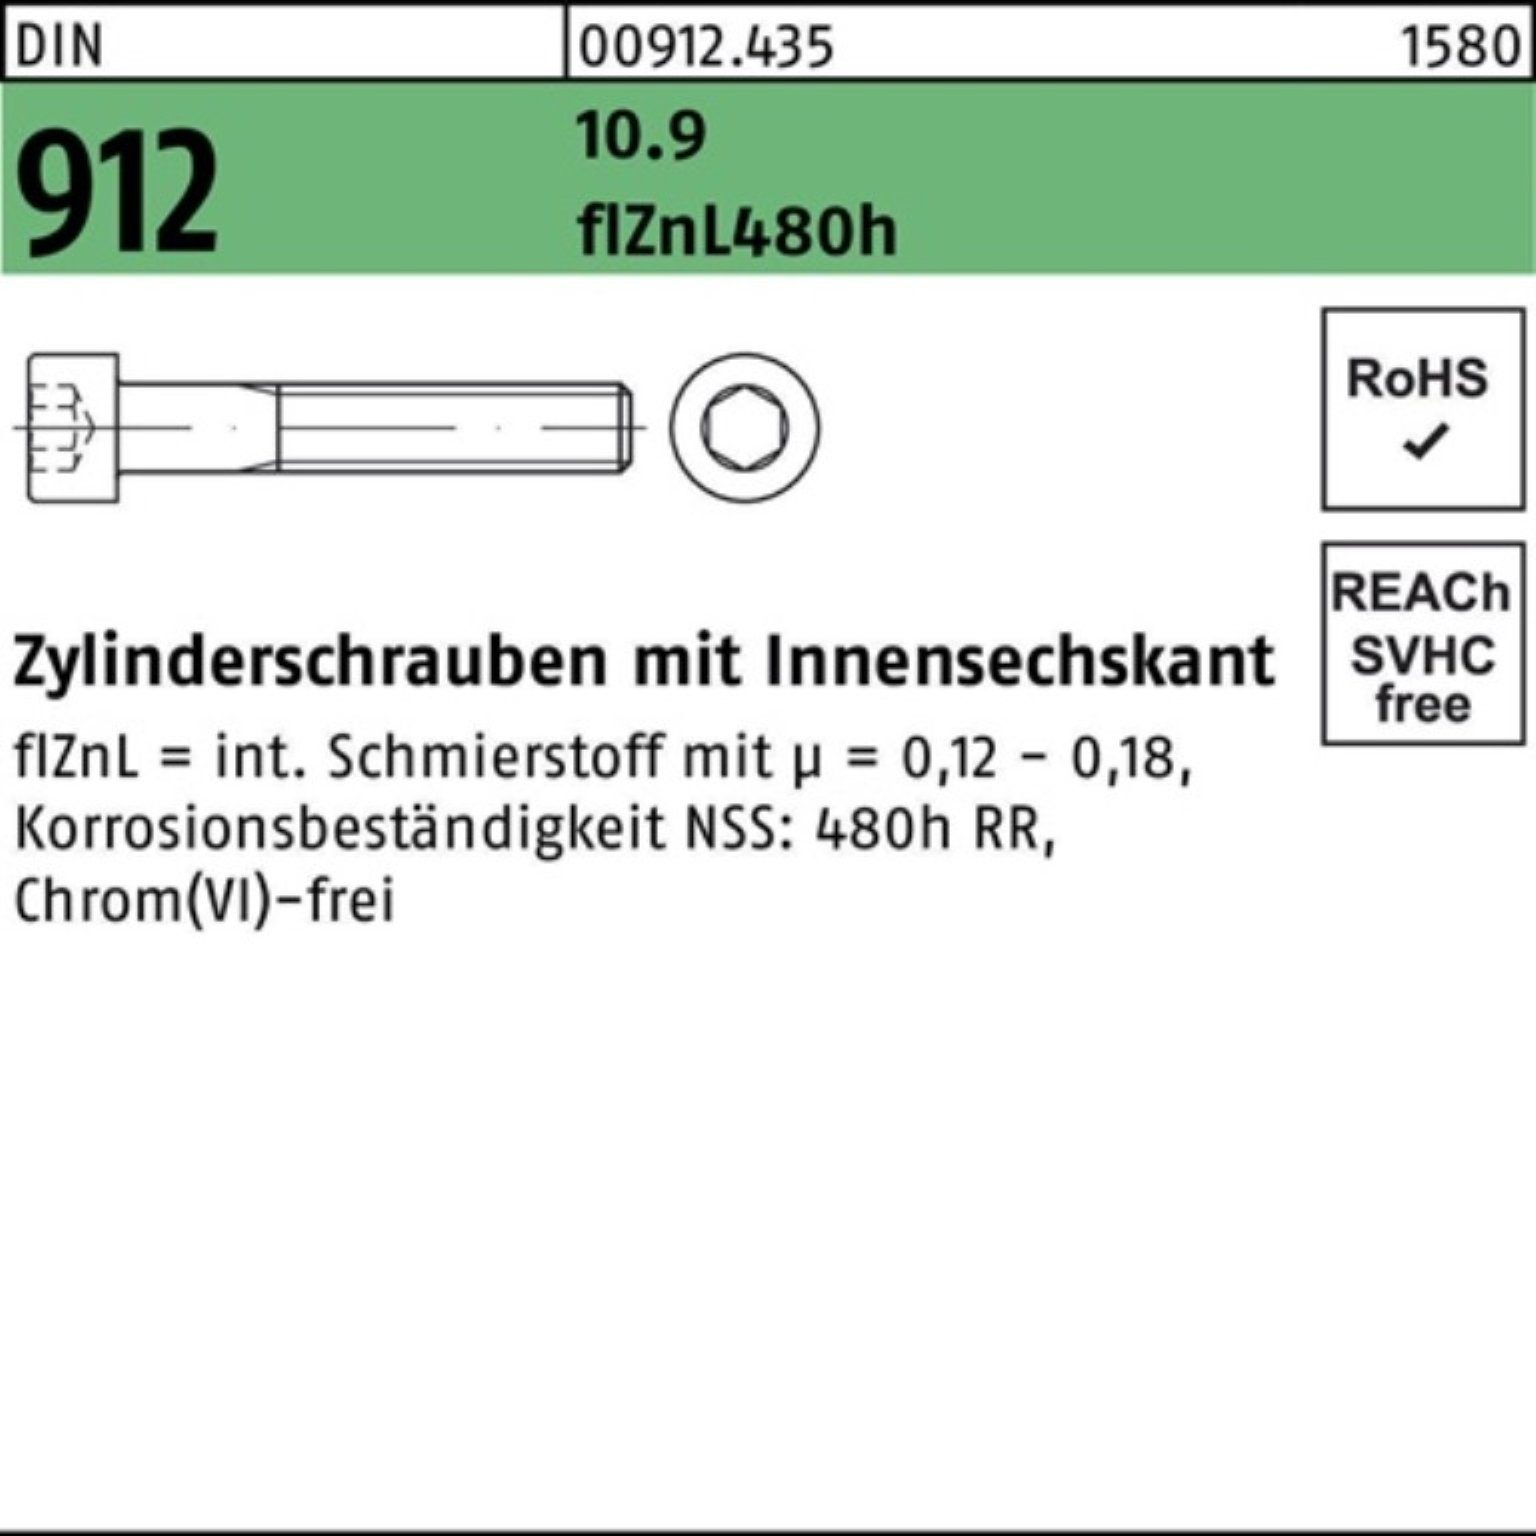 200er Zylinderschraube Innen-6kt DIN flZnL/nc/x/x 912 Zylinderschraube M8x50 Reyher 10.9 Pack